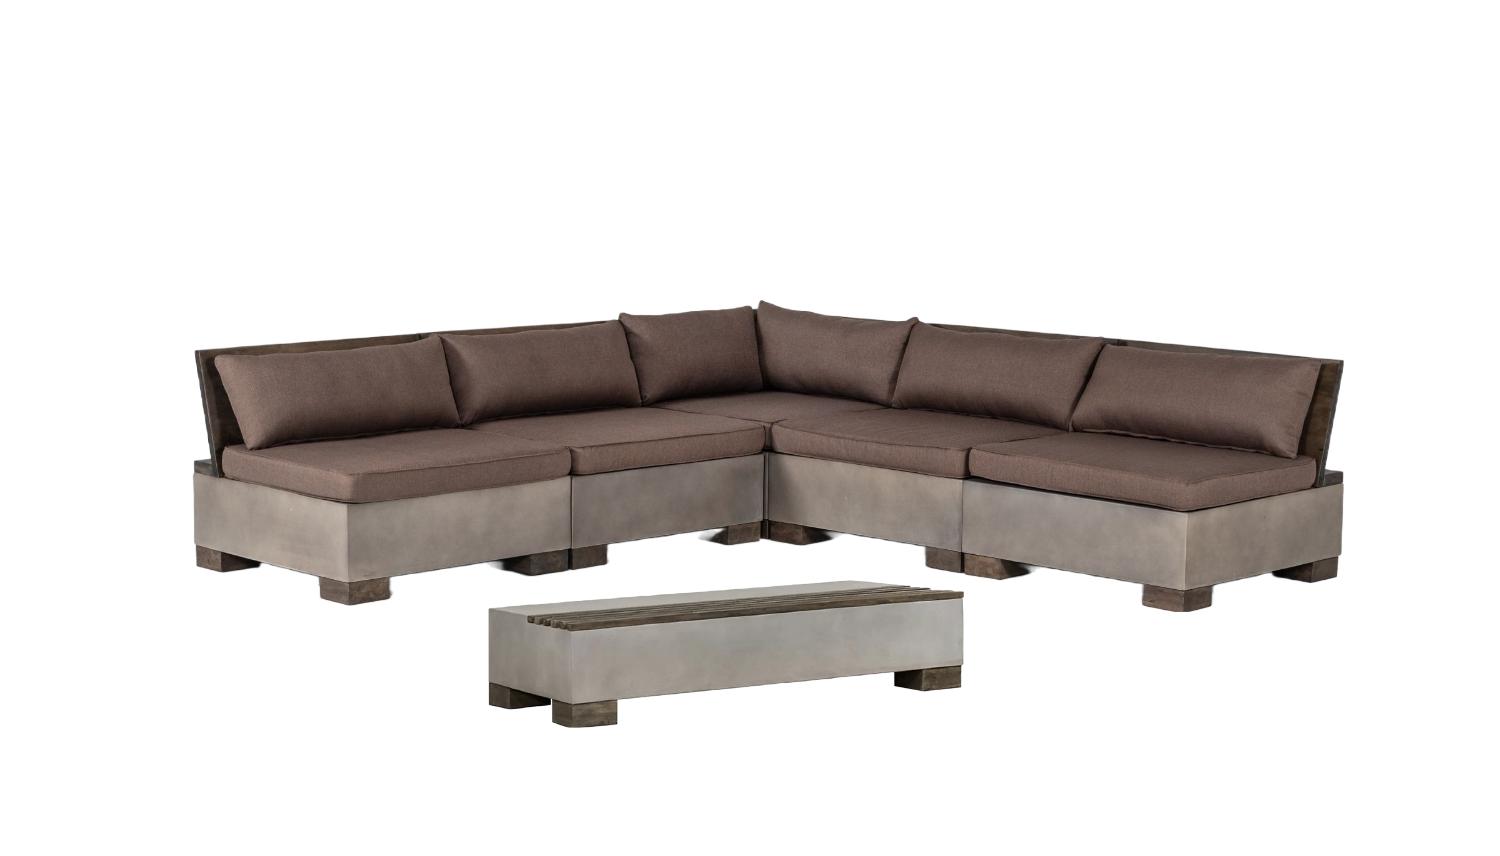 VIG Furniture Modrest Delaware Modular Sectional Sofa